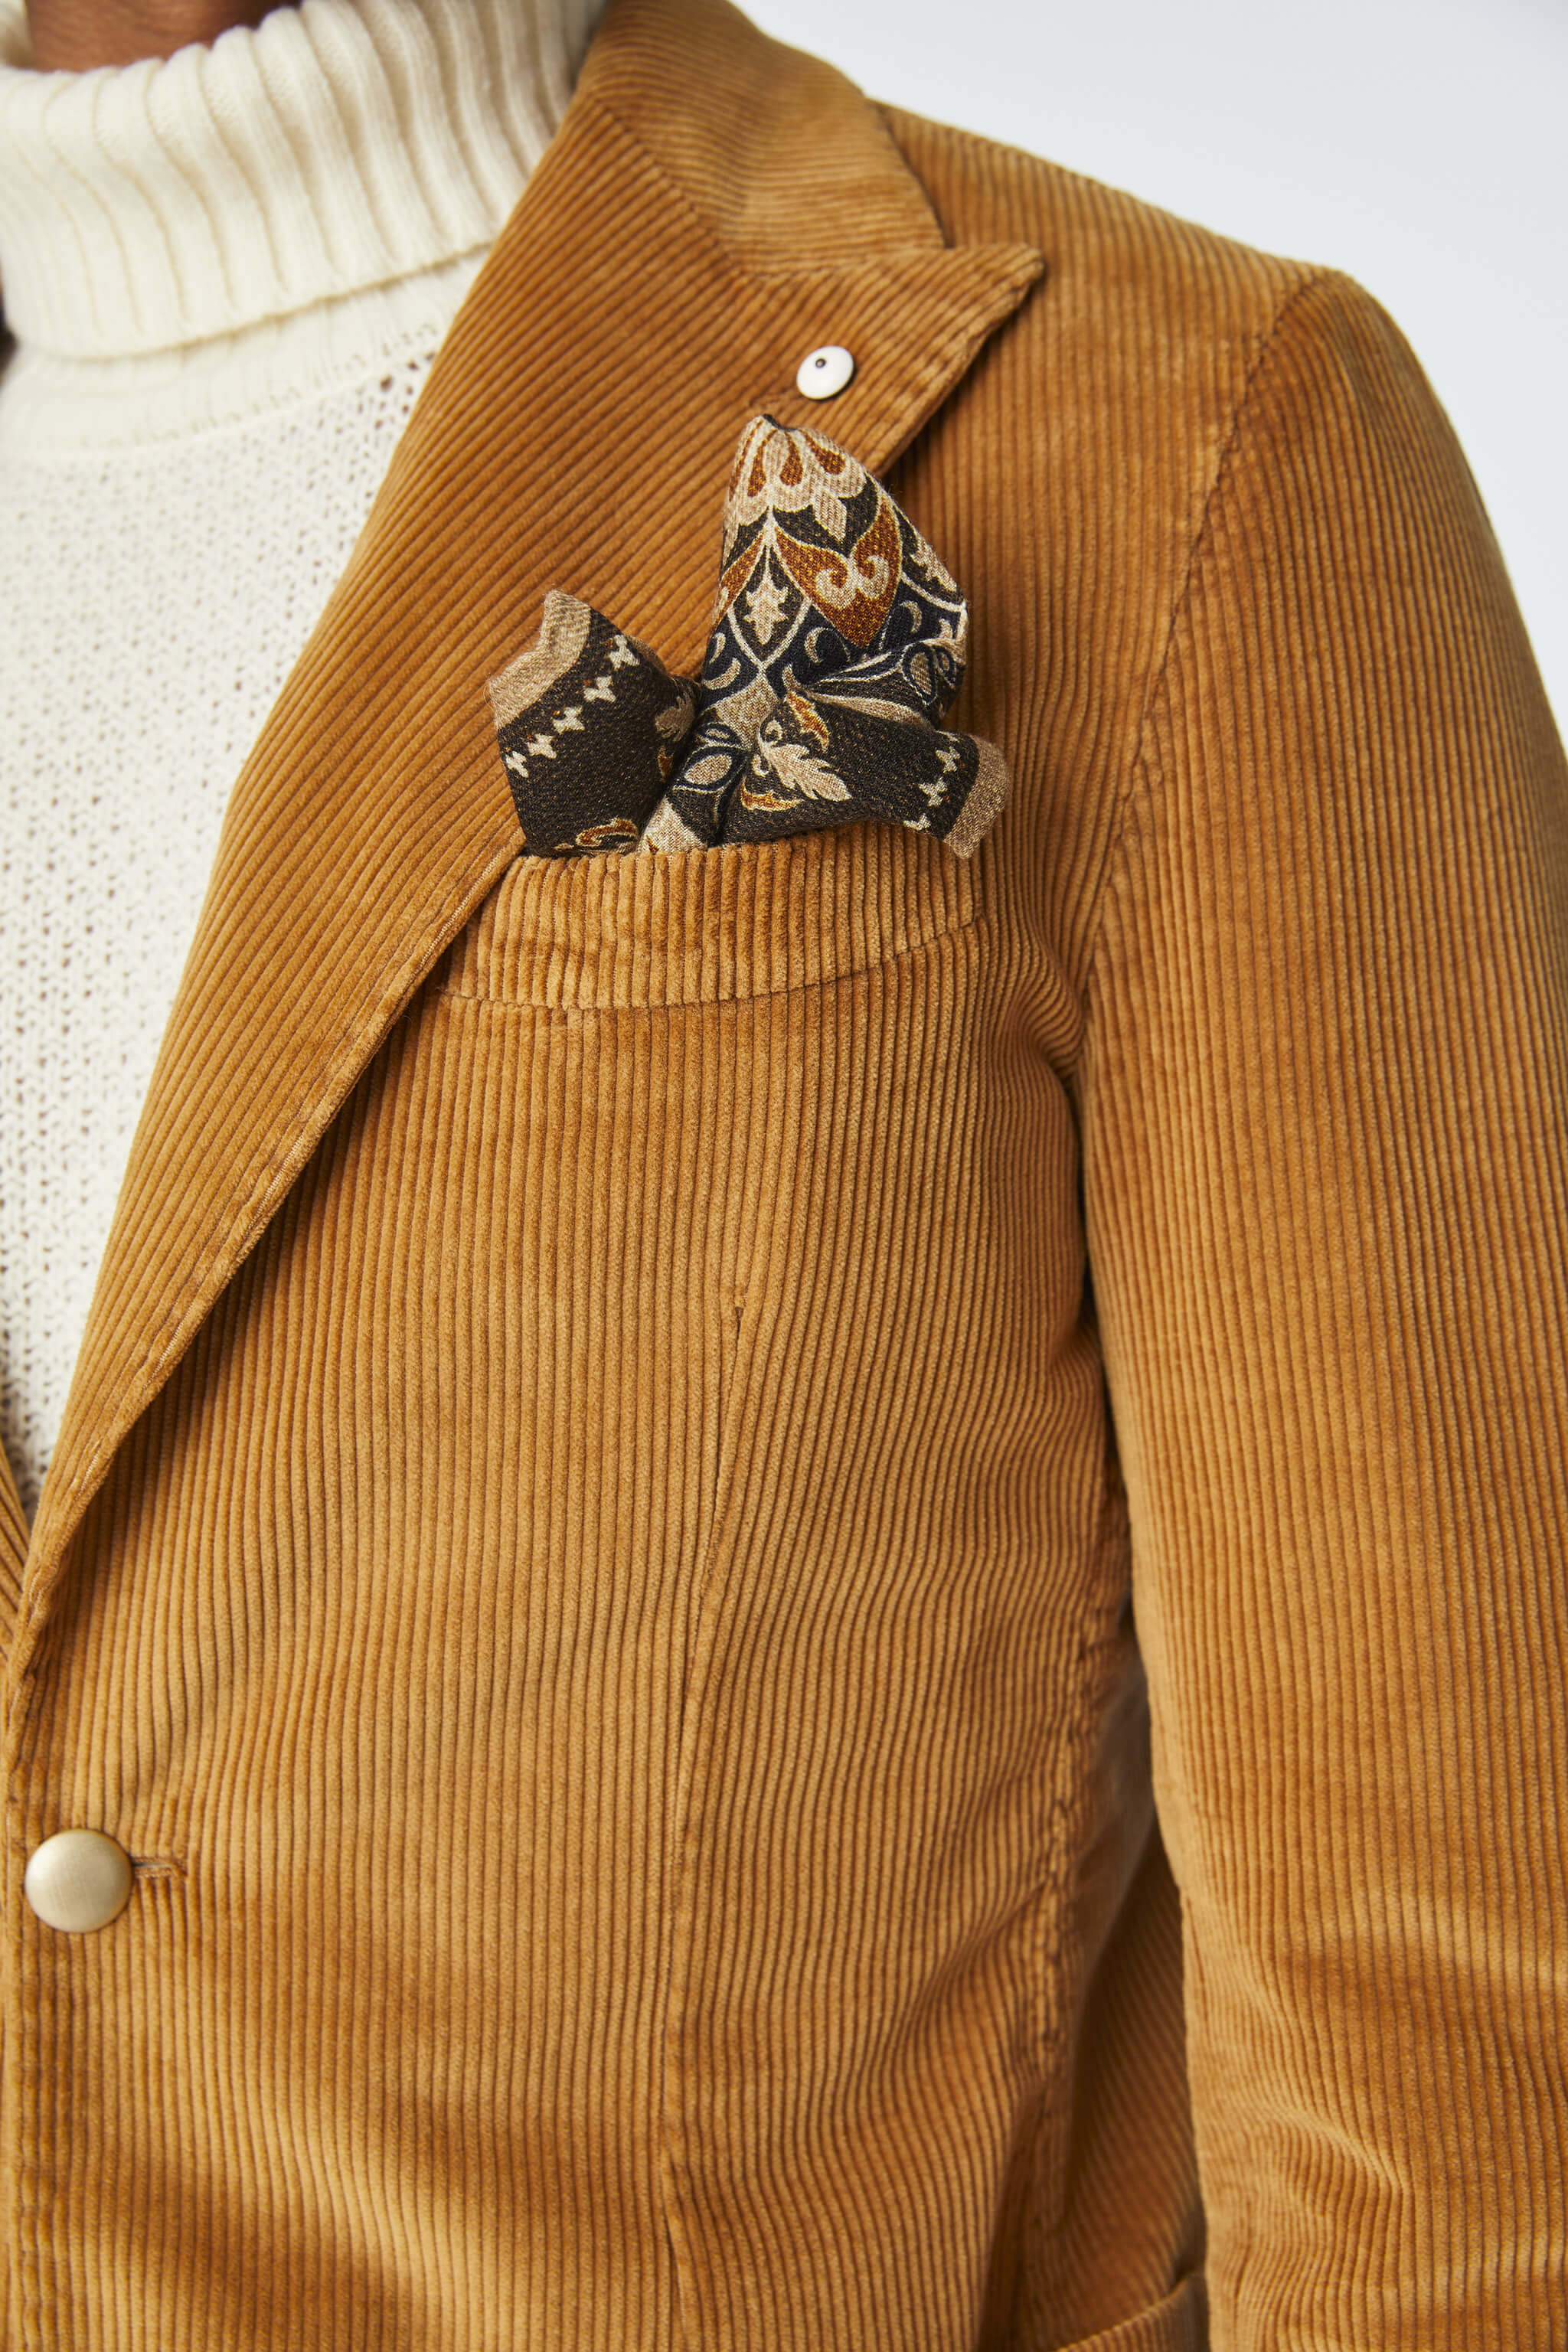 Garment-dyed STEVE jacket in ochre